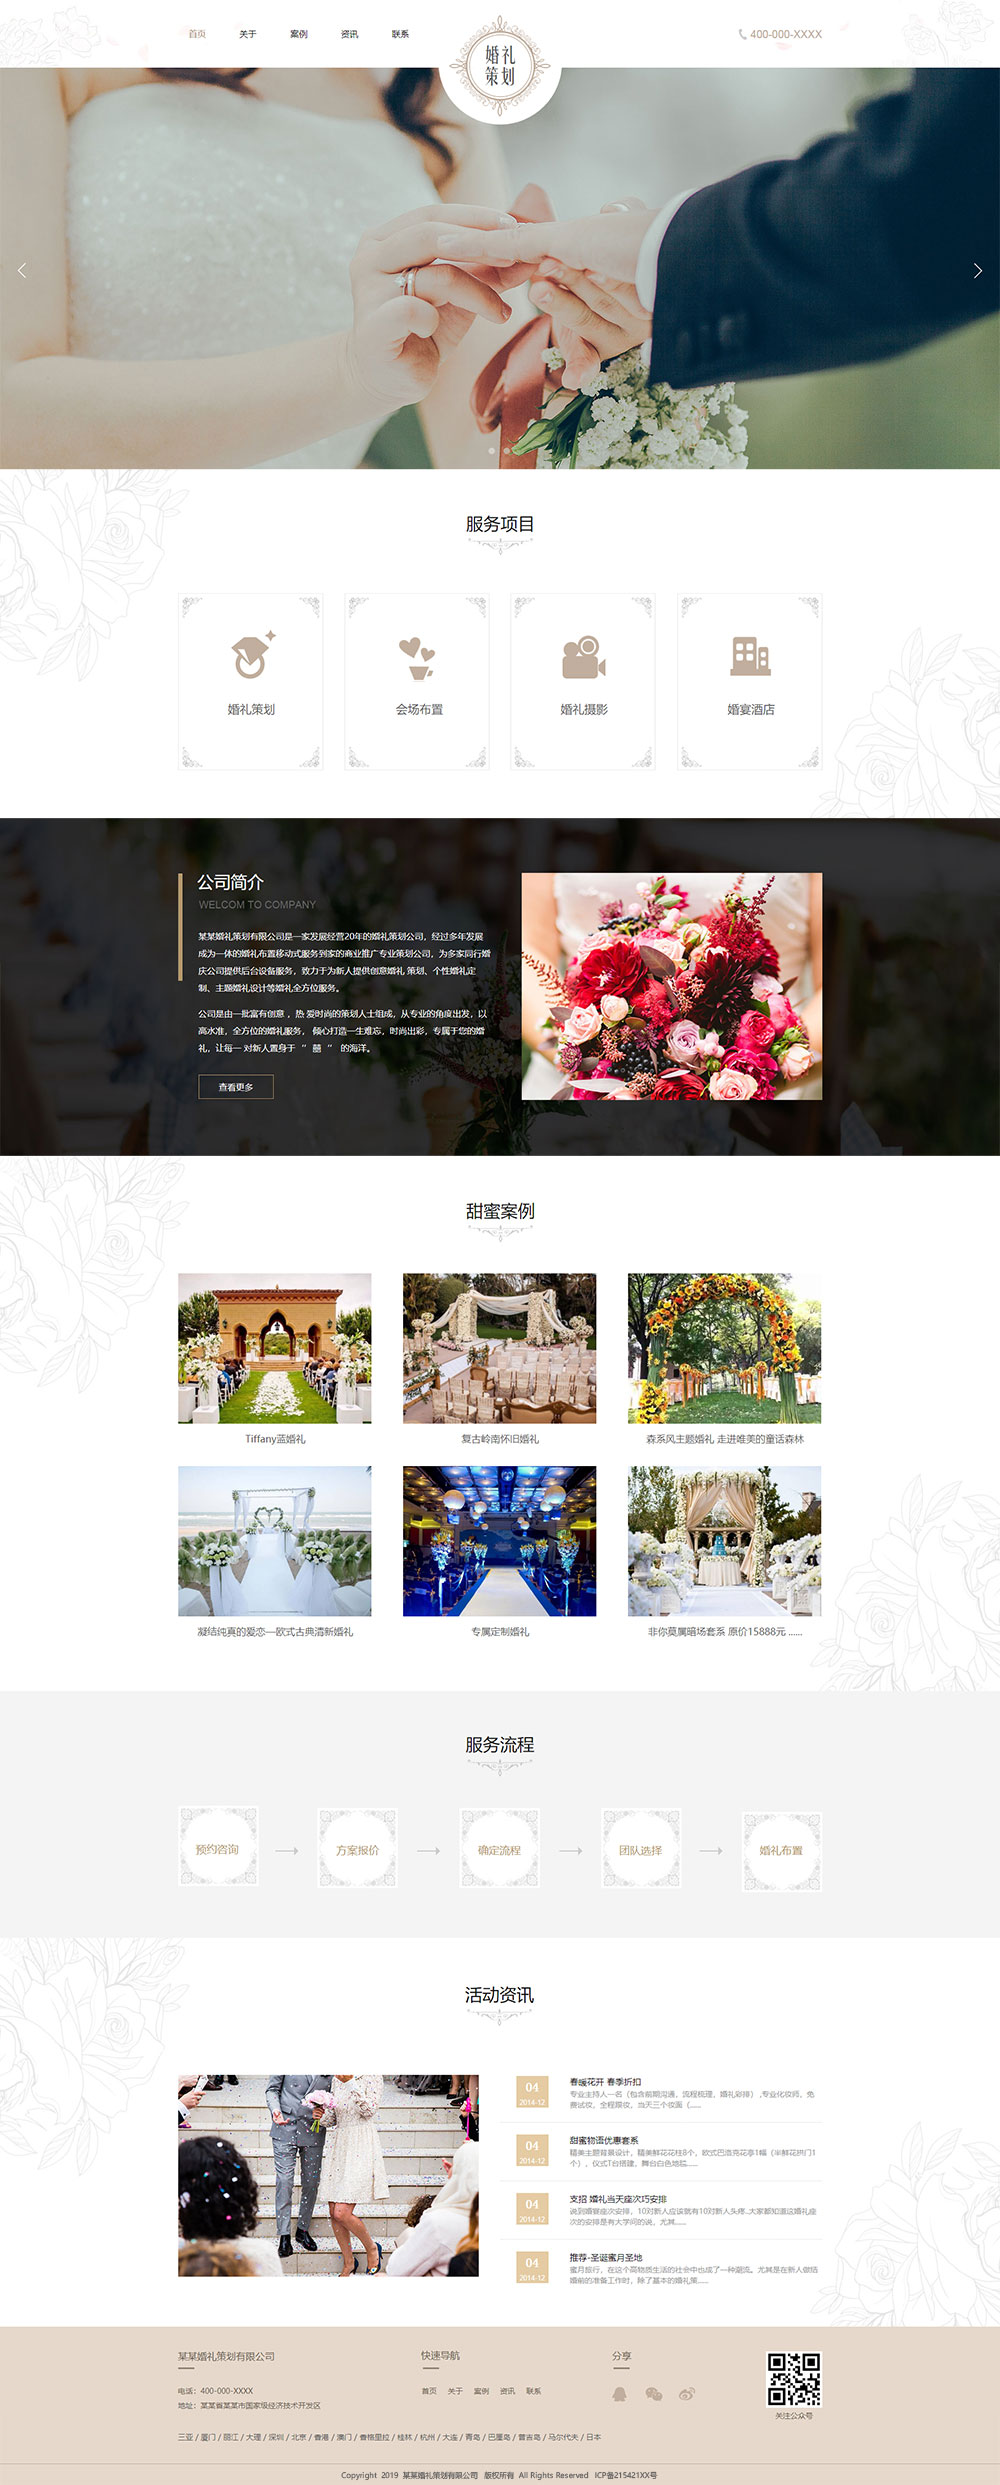 企业网站精美模板-wedding-204